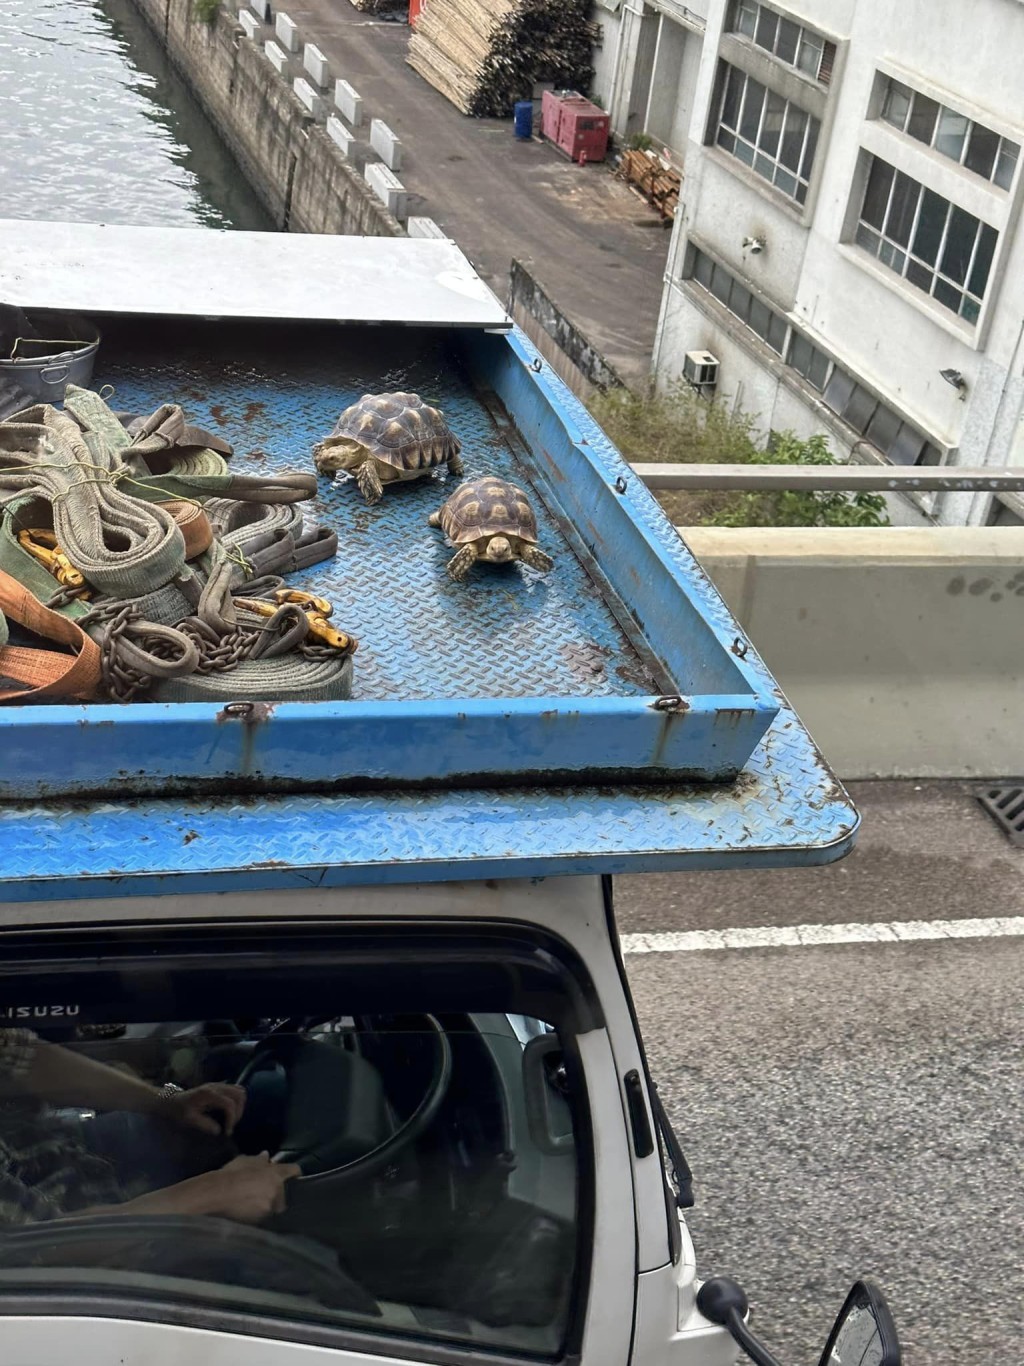 吊鸡车顶的2头豹纹陆龟在行车期间完全无任何安全措施。(facebook车cam L群组)